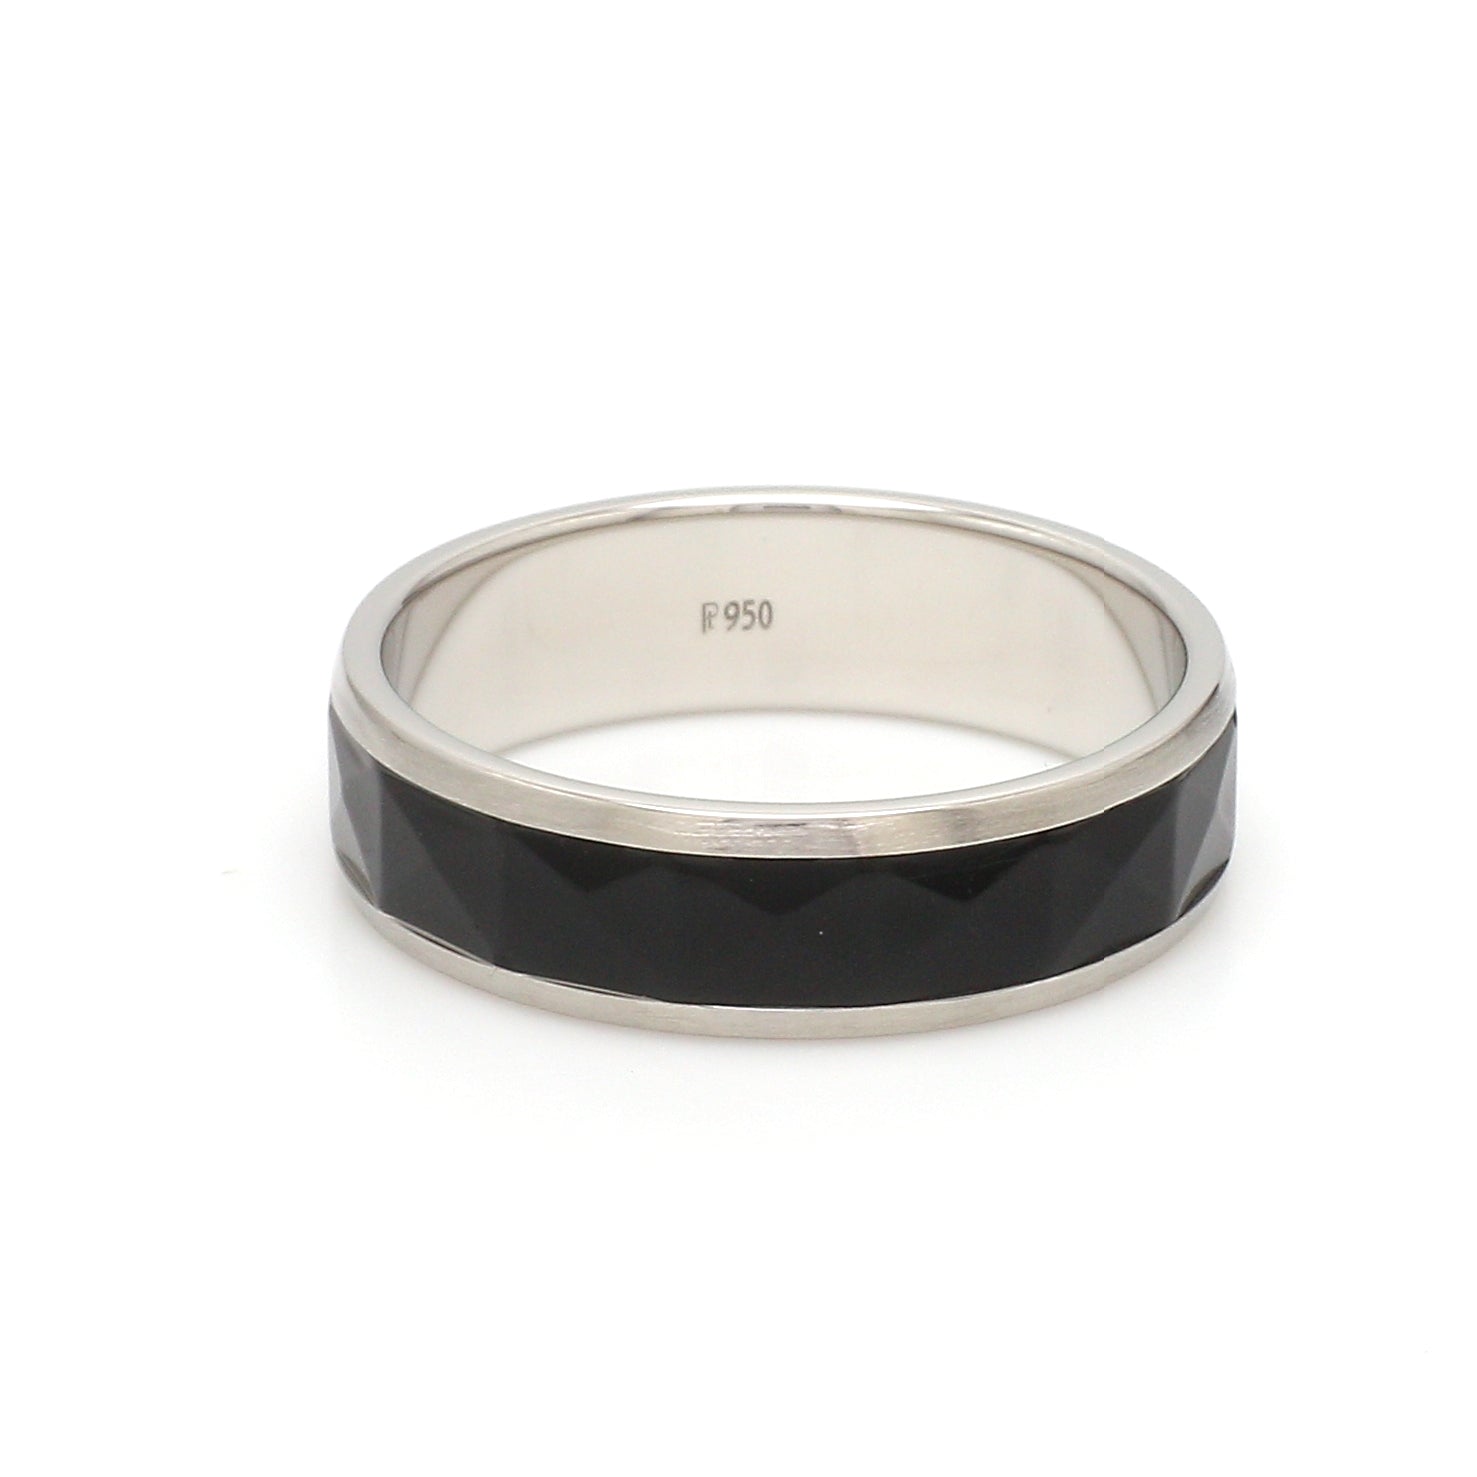 Platinum Couple Unisex Ring with Black Ceramic JL PT 1330   Jewelove